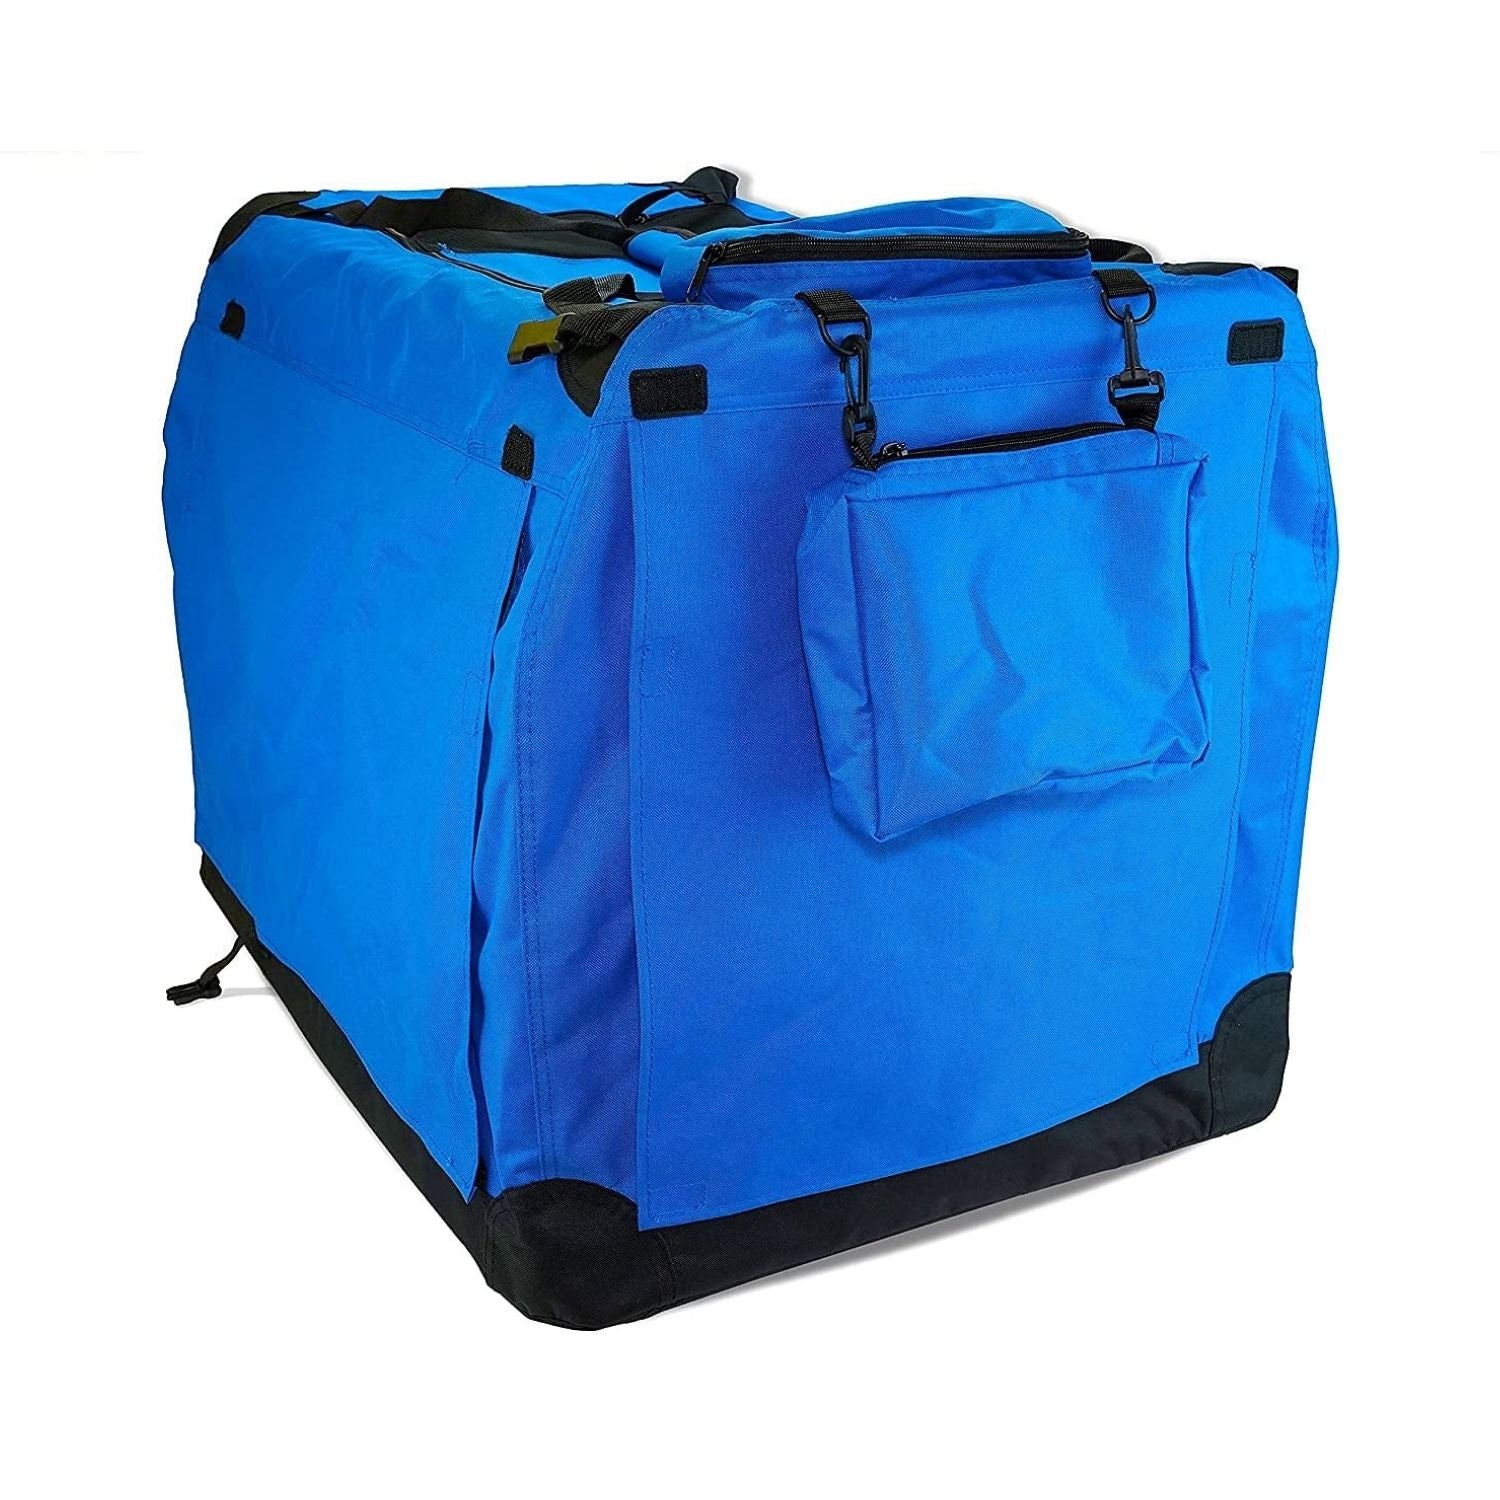 FLOOFI Portable Pet Carrier-Model 1-M Size (Blue)